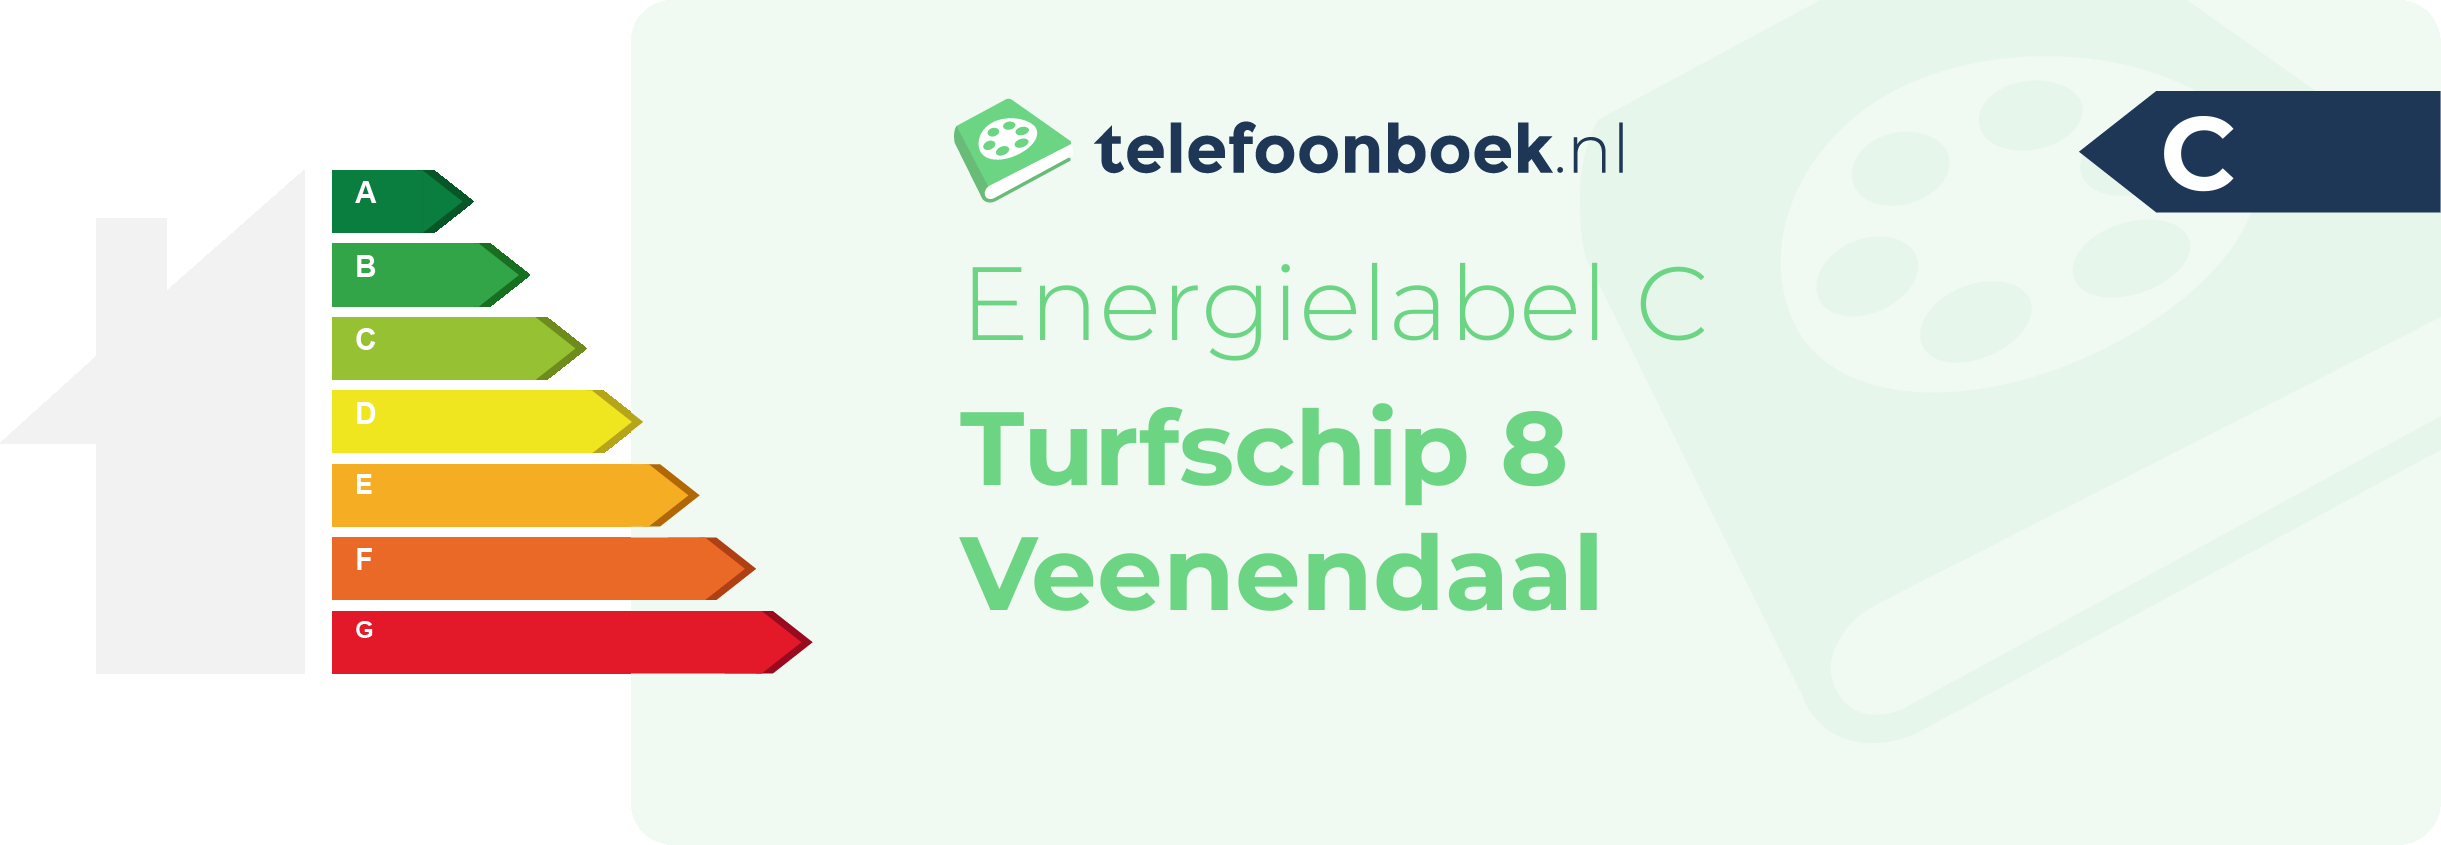 Energielabel Turfschip 8 Veenendaal